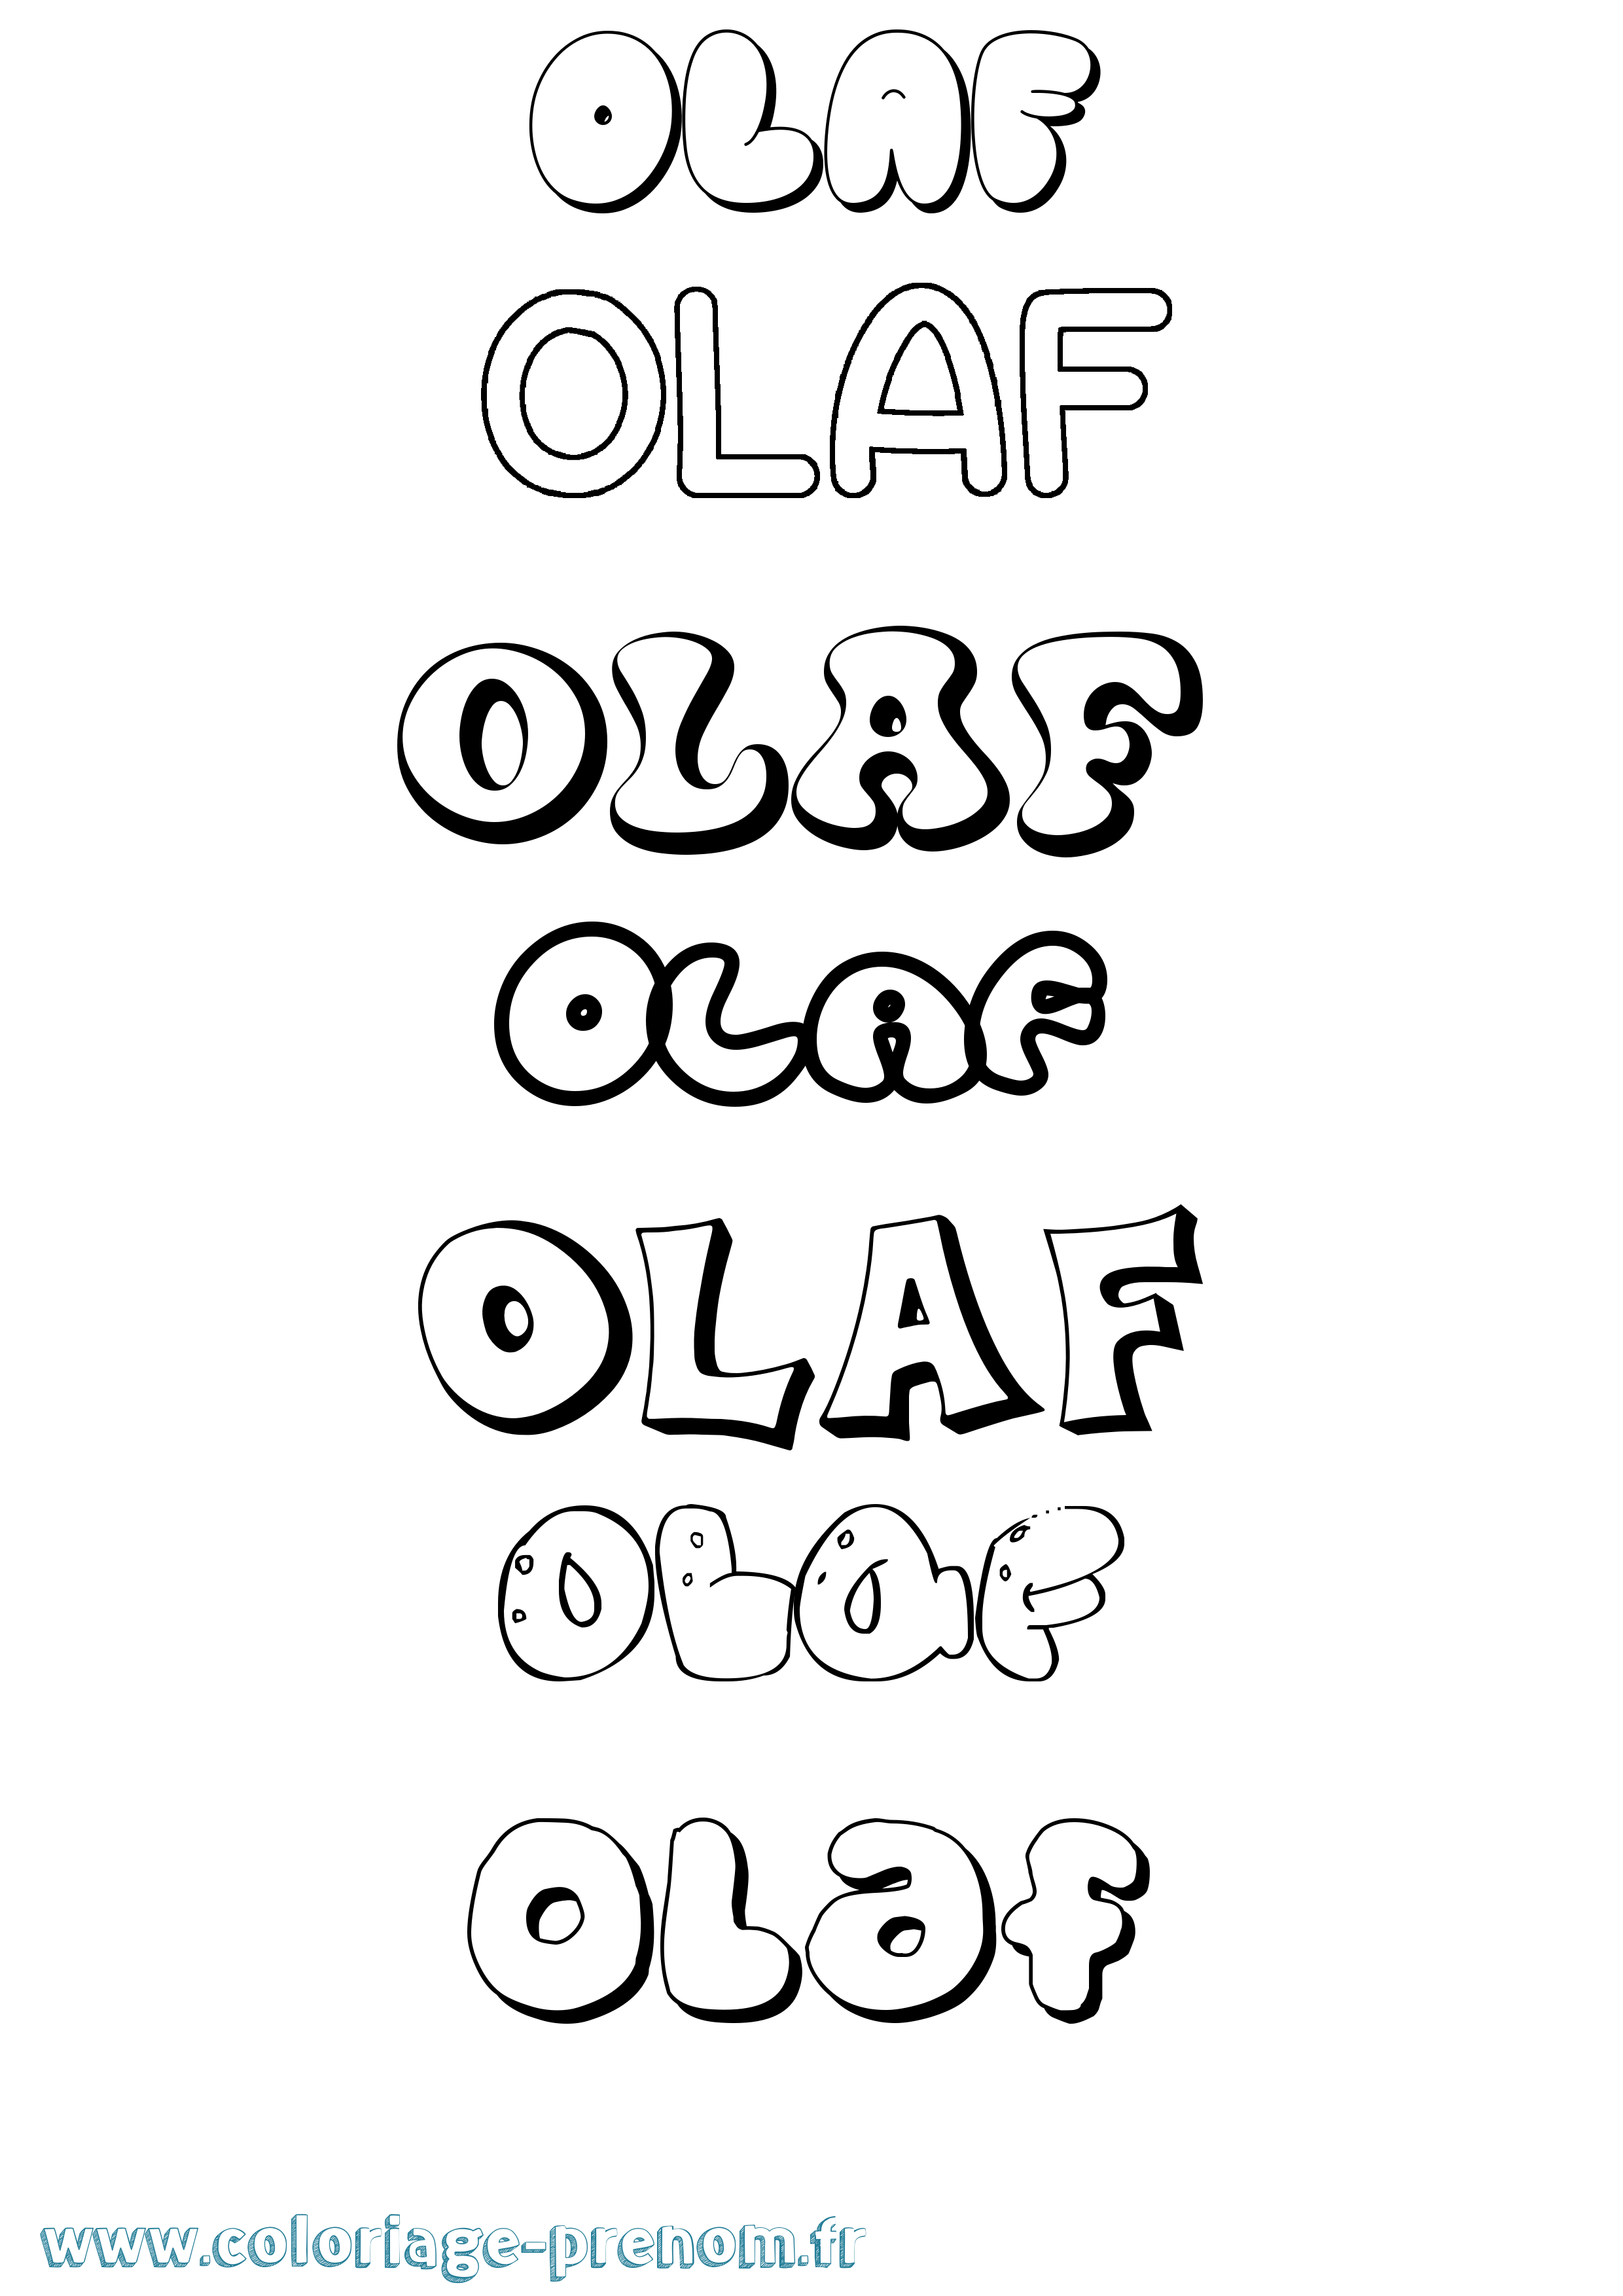 Coloriage prénom Olaf Bubble